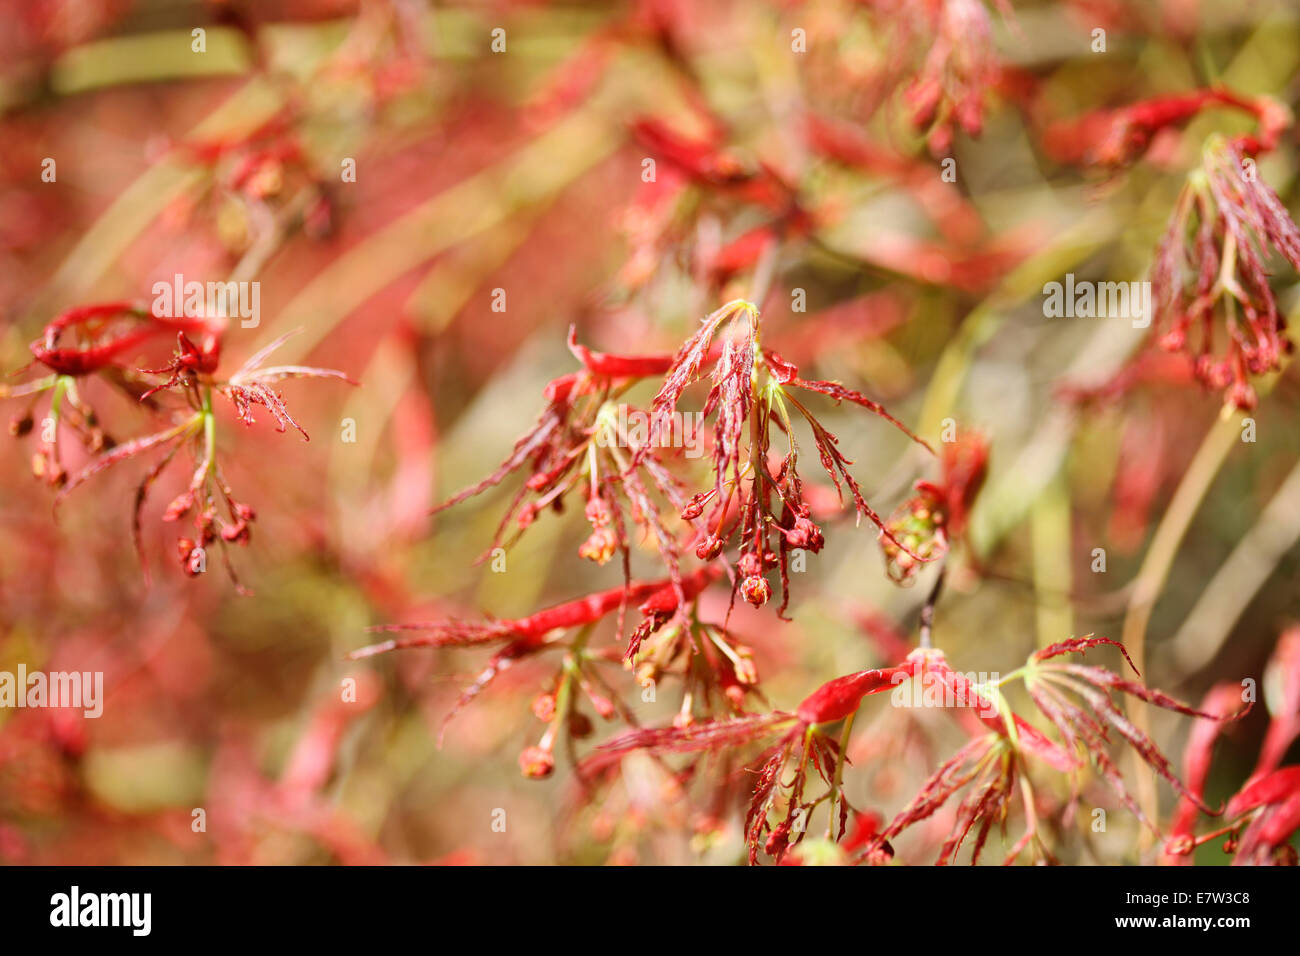 rot Acer im Frühjahr Knospen © Jane Ann Butler Fotografie JABP1309 Stockfoto